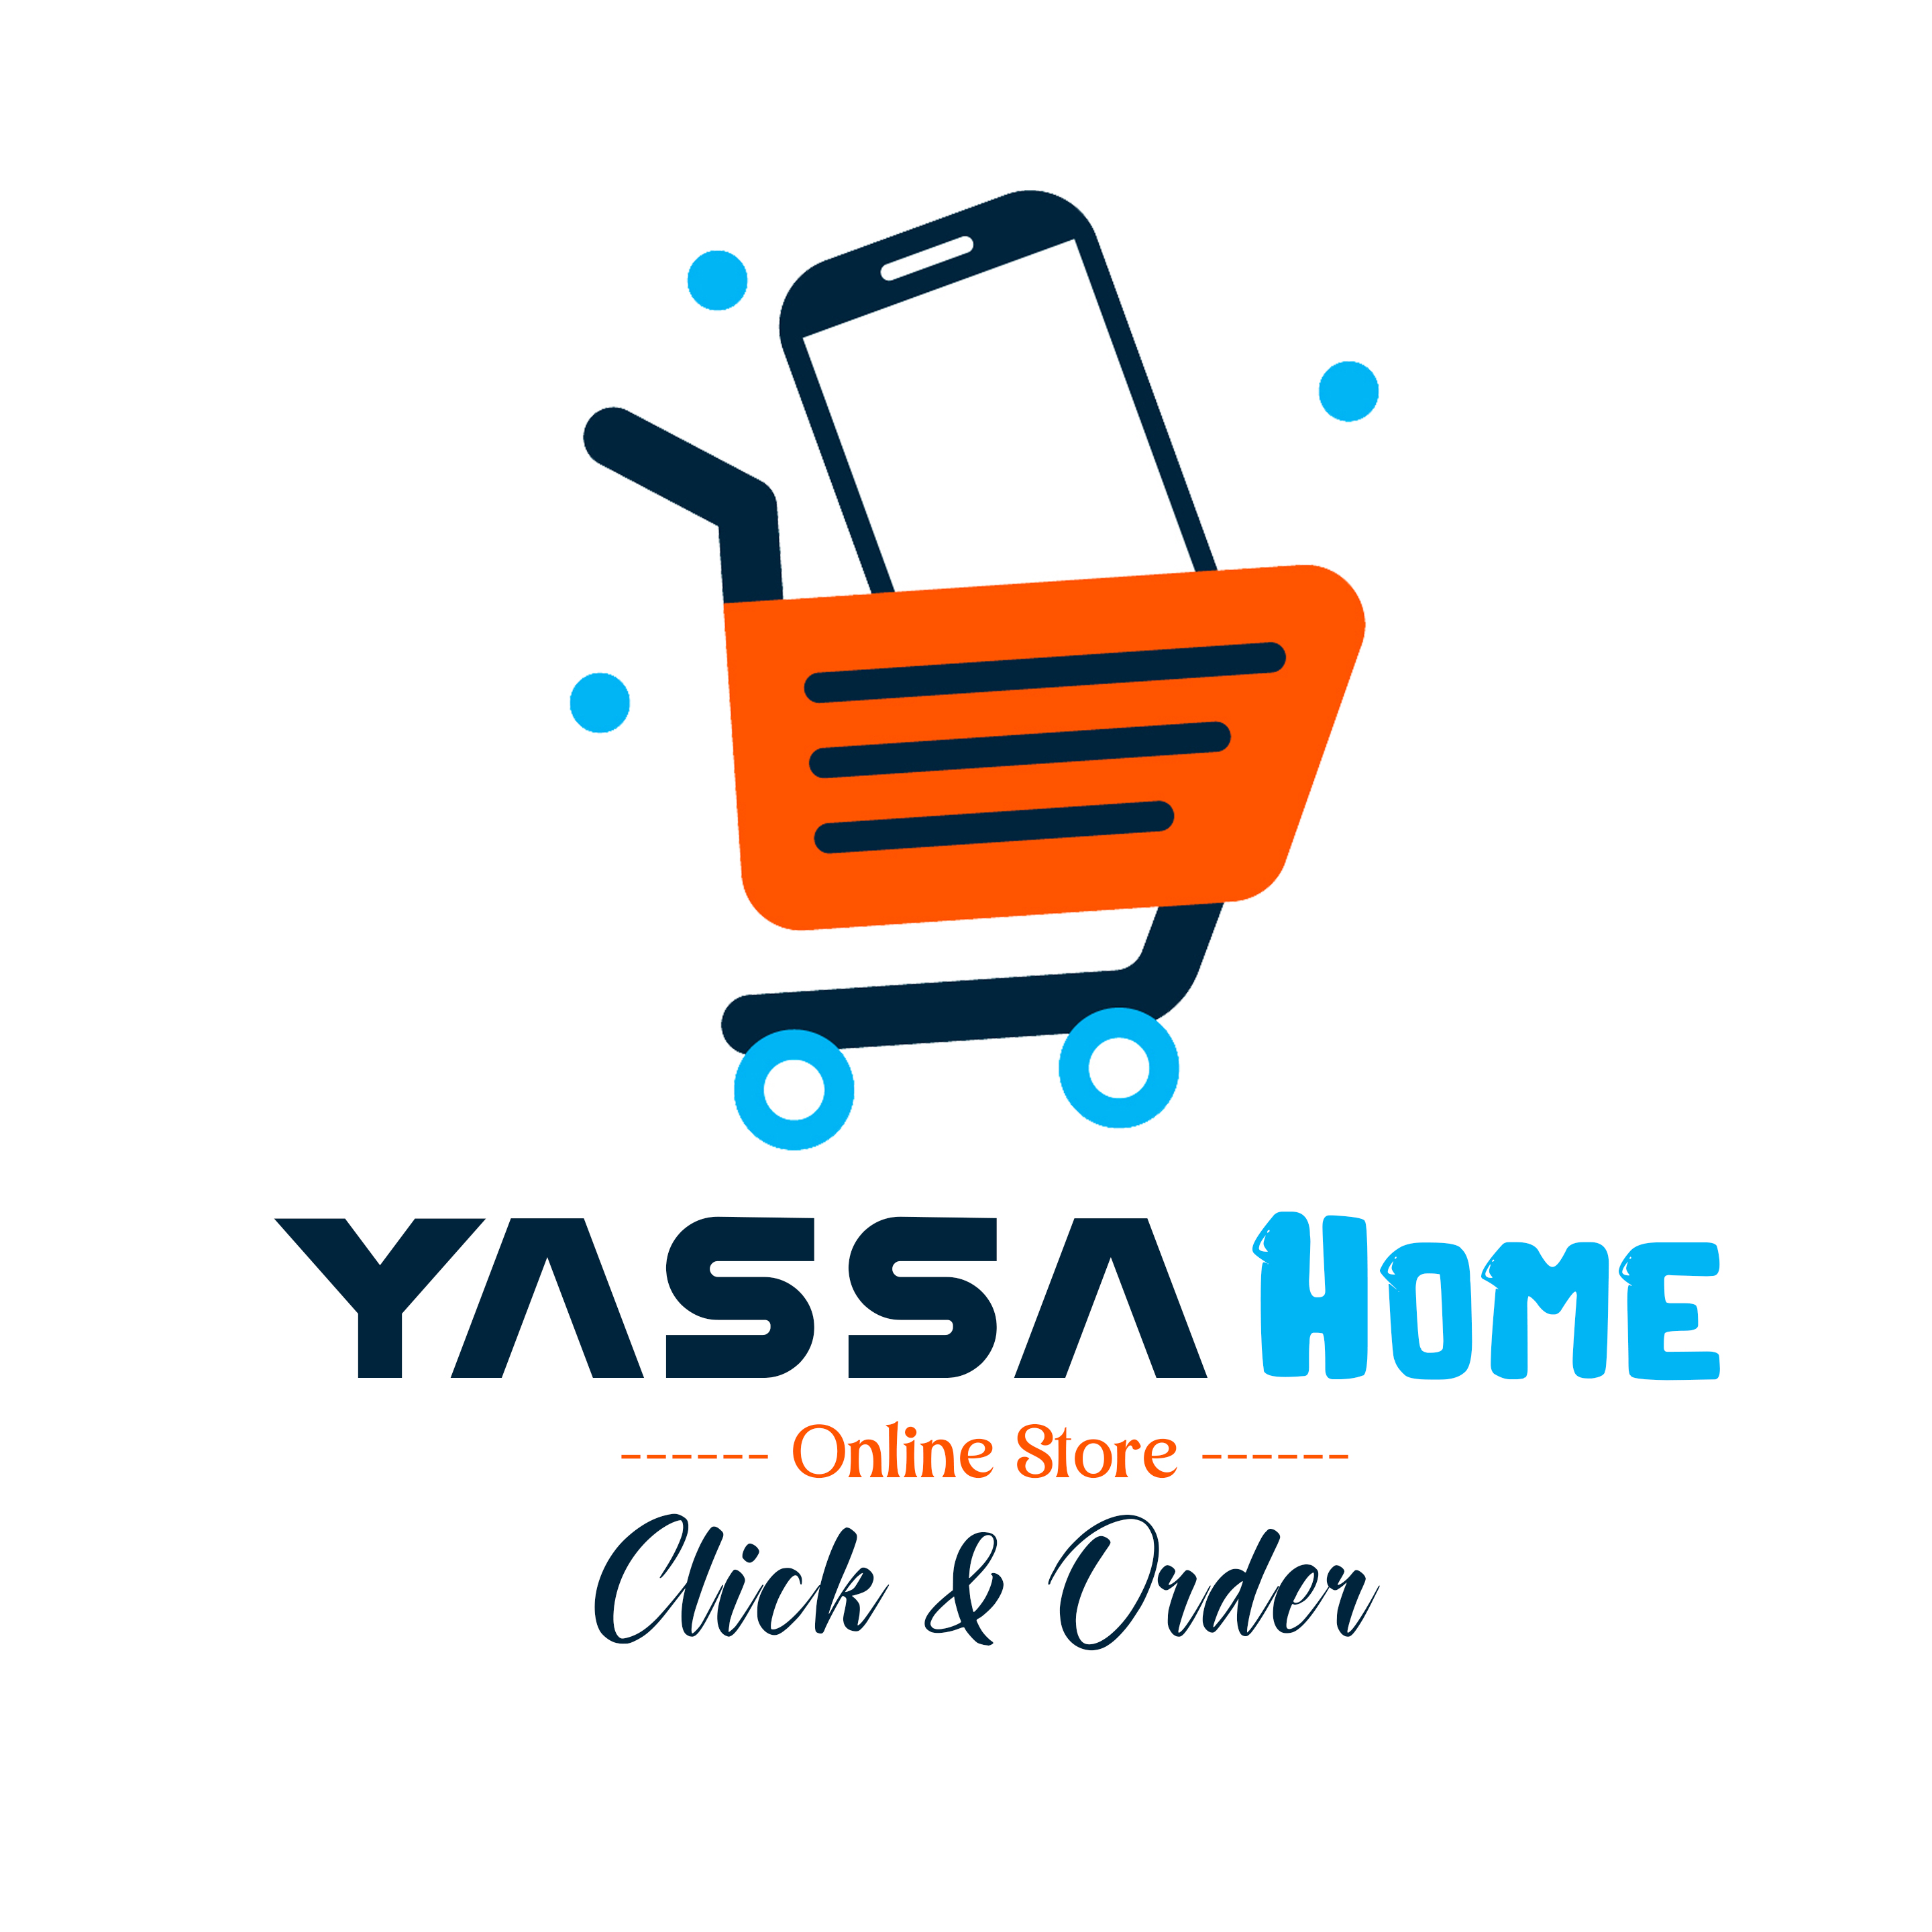 Yassa Home